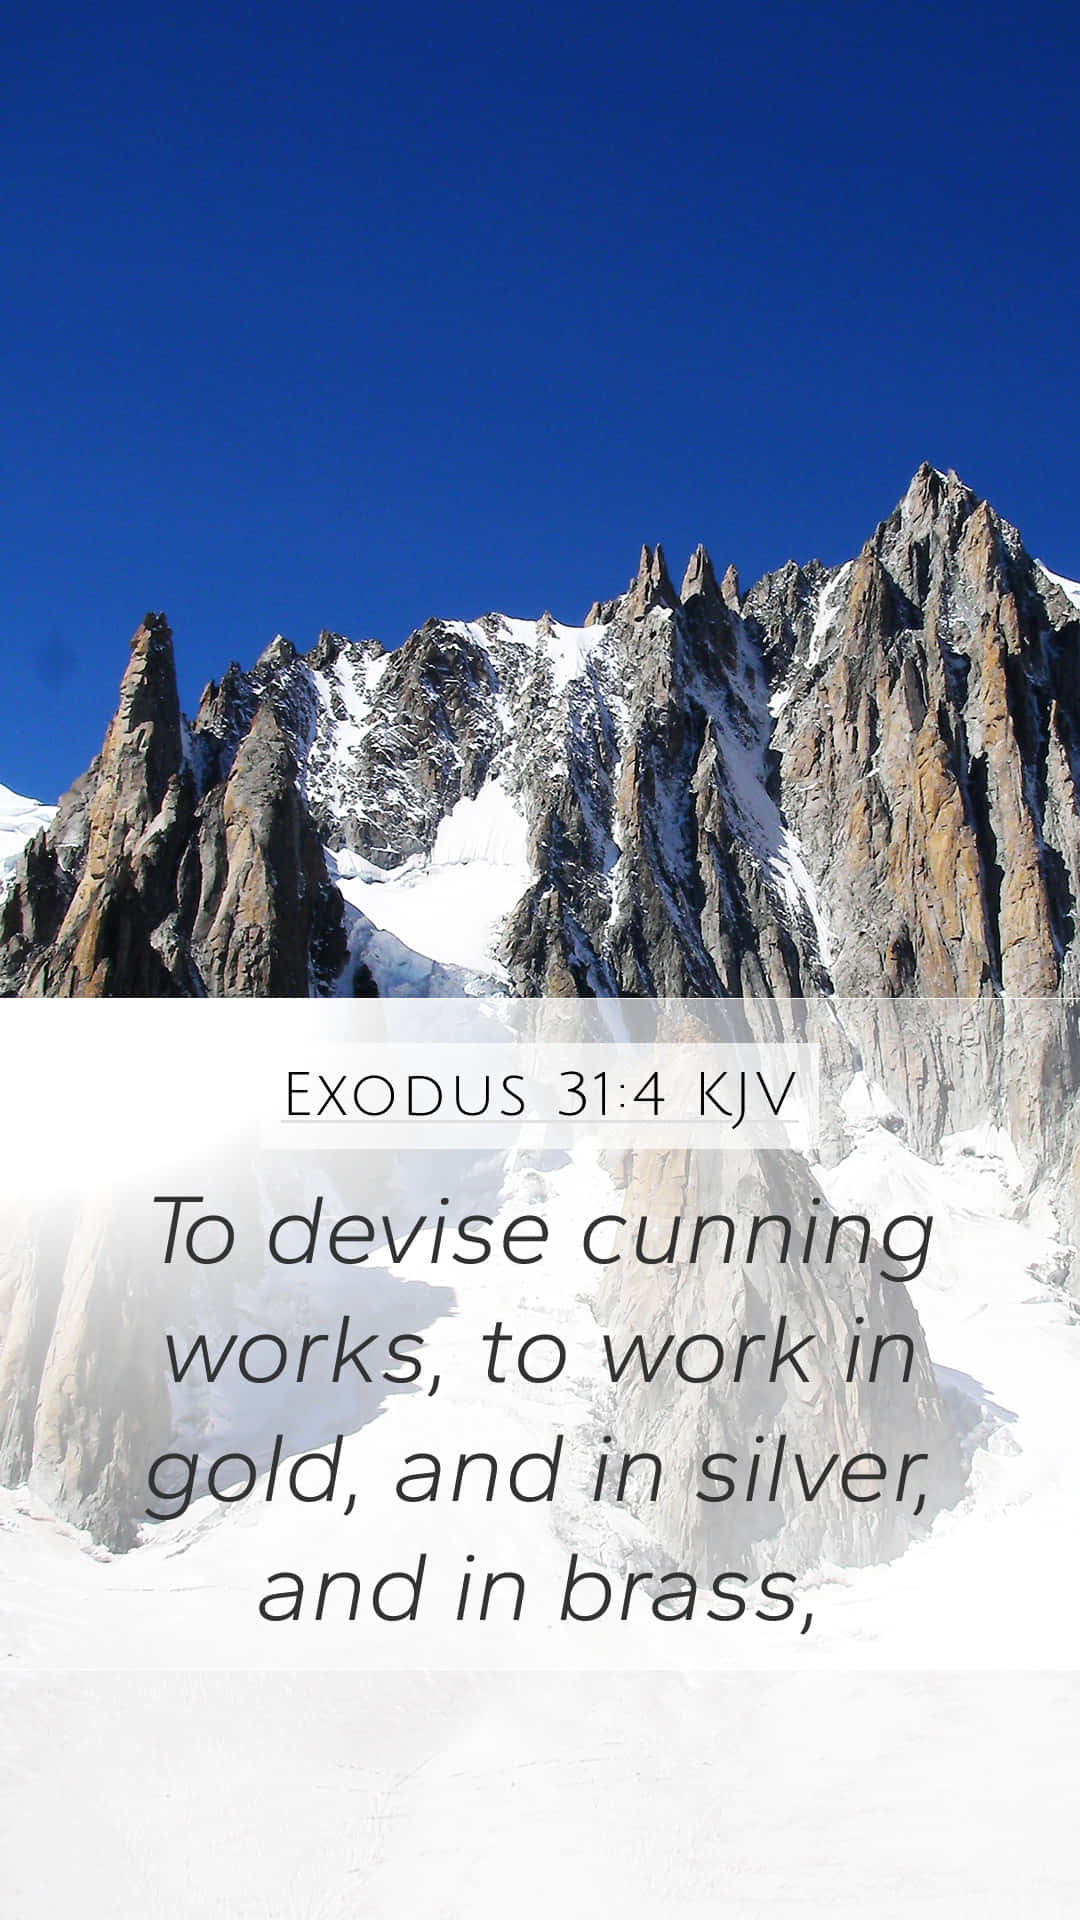 Cunning Bible Verse Blue Sky Wallpaper